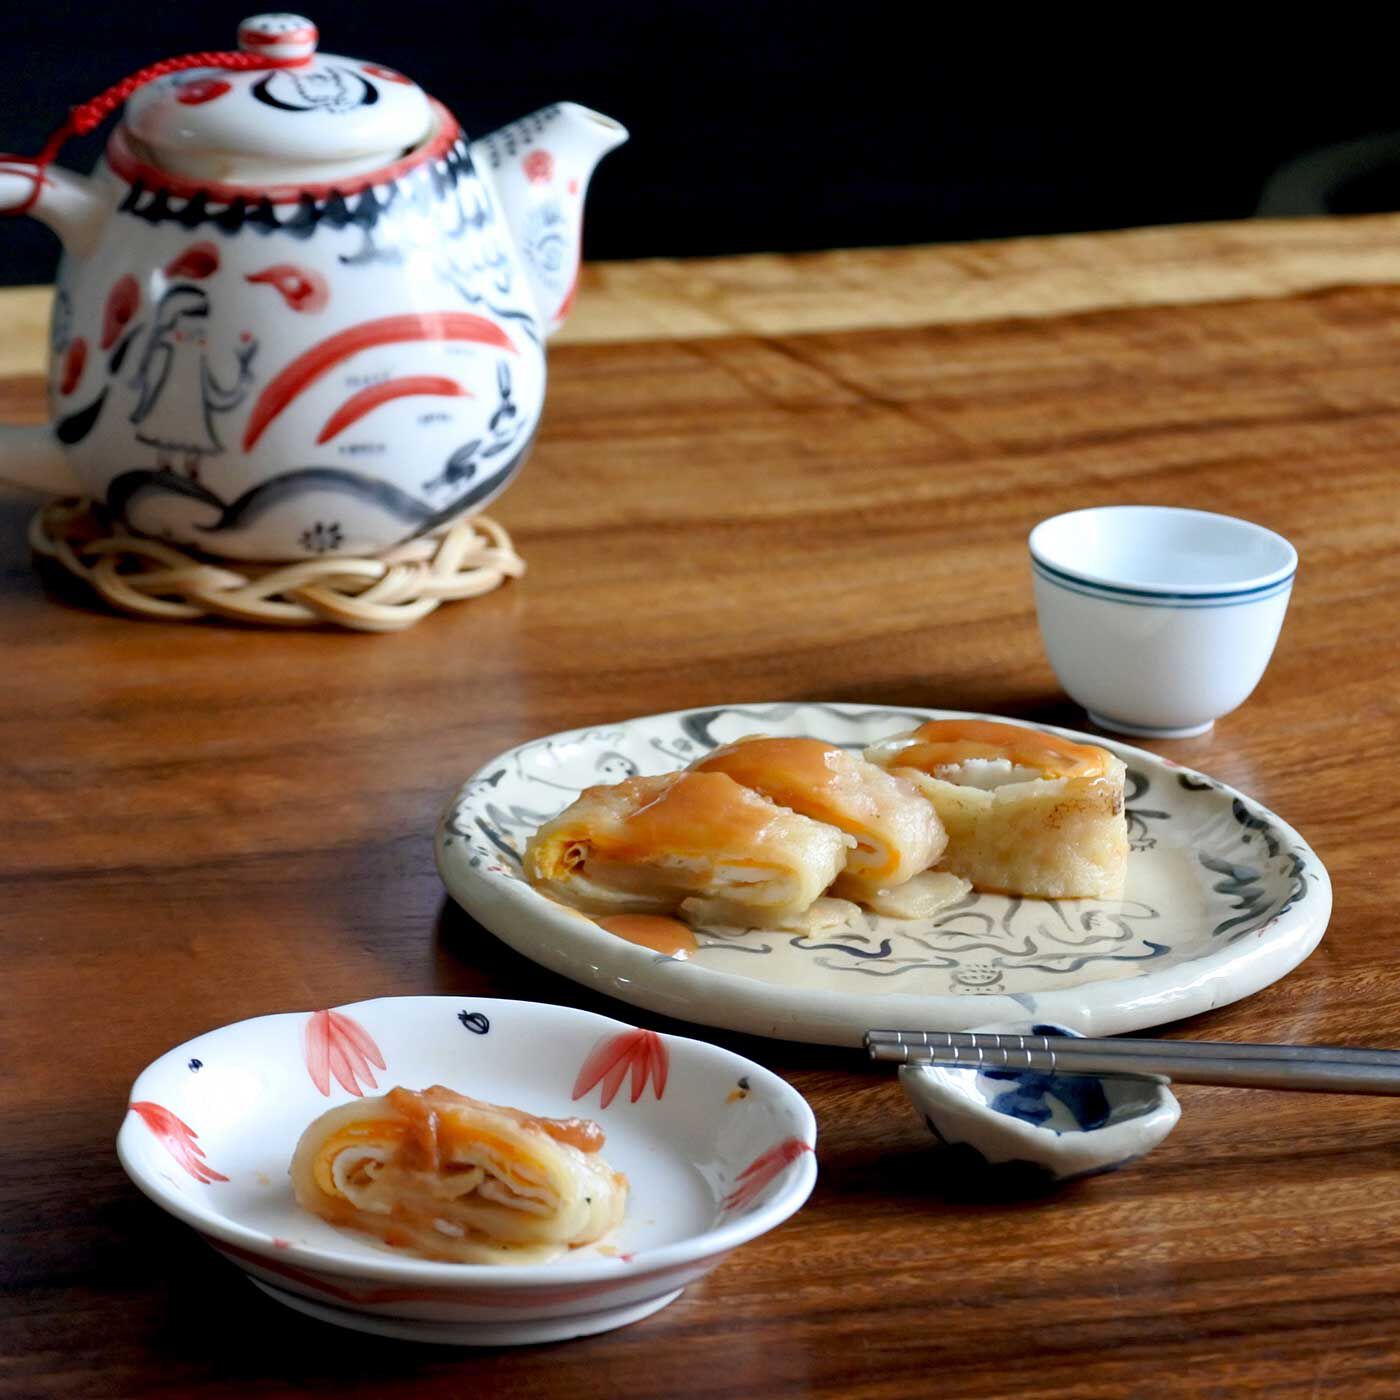 Natucul Chou Club(ナチュカル・シュークラブ)|小宇宙食堂リンシエさんの台湾の朝ごはん 蛋餅と海山醤ソース手づくりキット（4袋）|台湾の「朝ごはん屋」さんでよく食べられている蛋餅（だんぴん）をごく気軽におうちで再現できるように作ったミックス粉とソースのキットです。